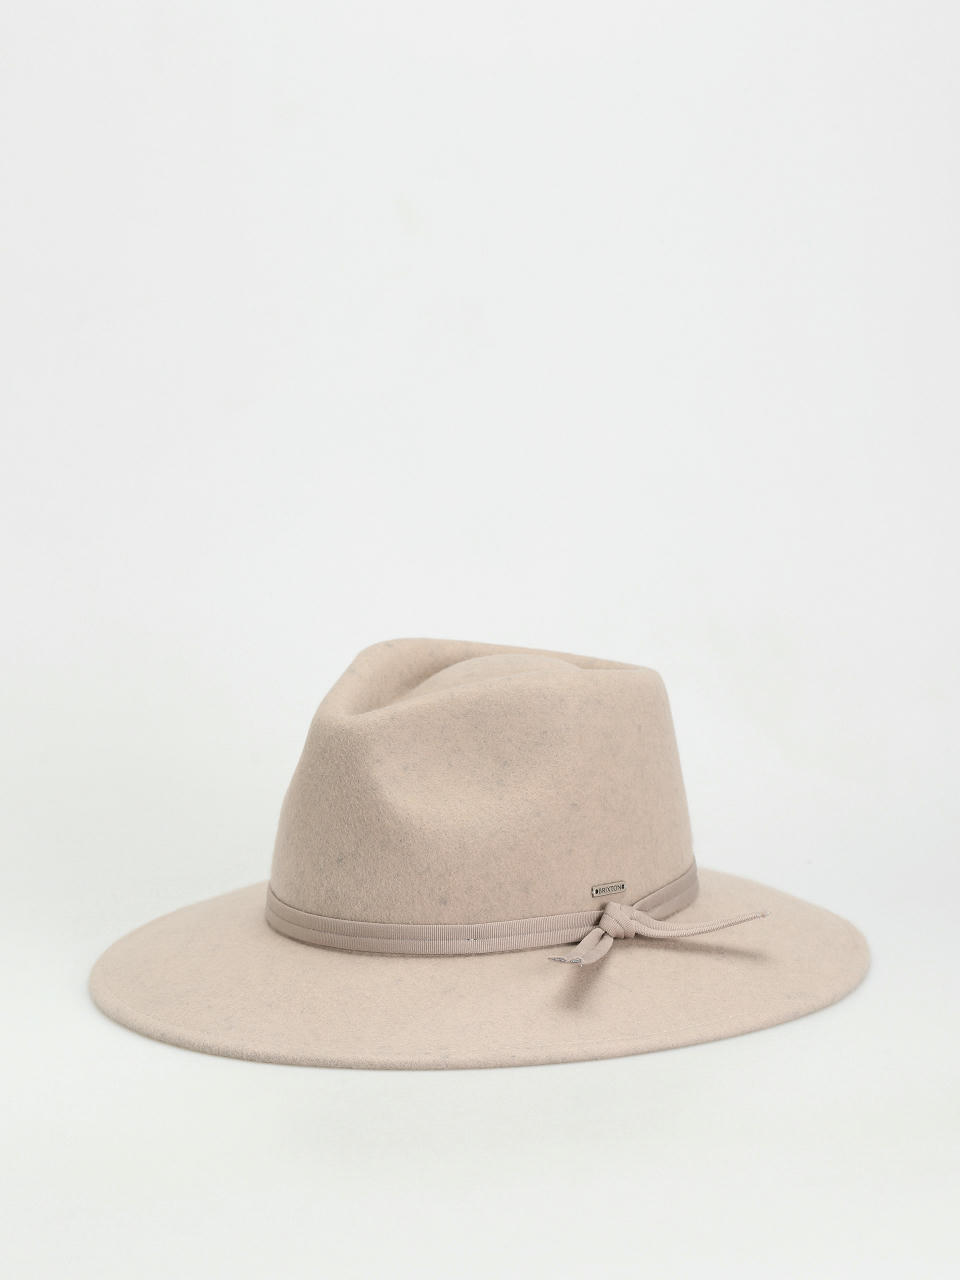 Hats - Sale